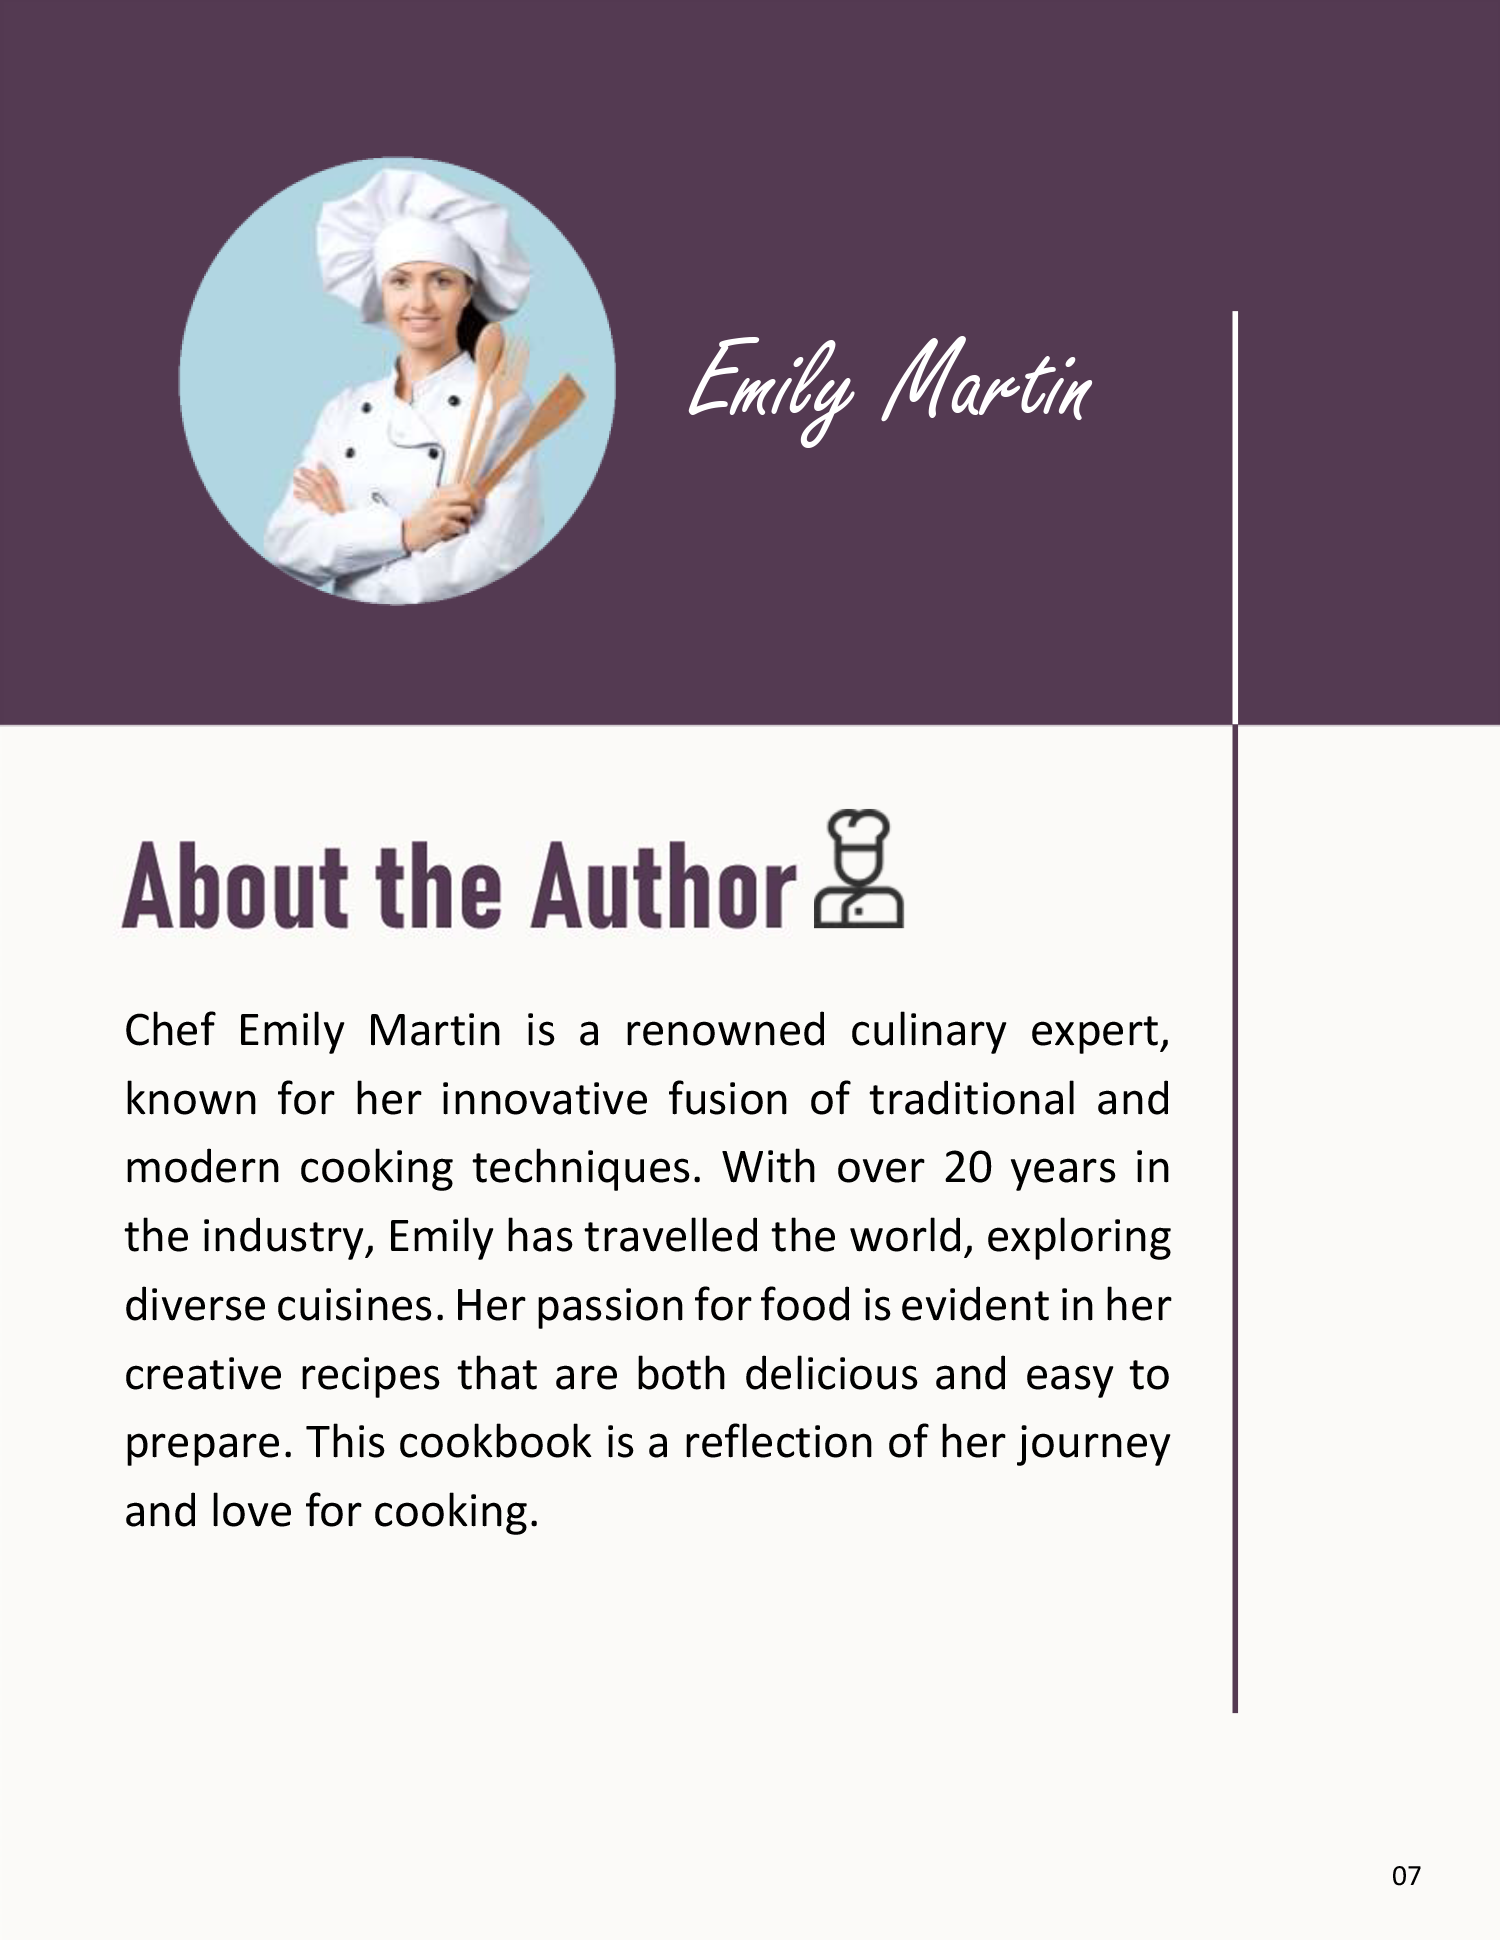 Recipe Cookbook Template - Page 07